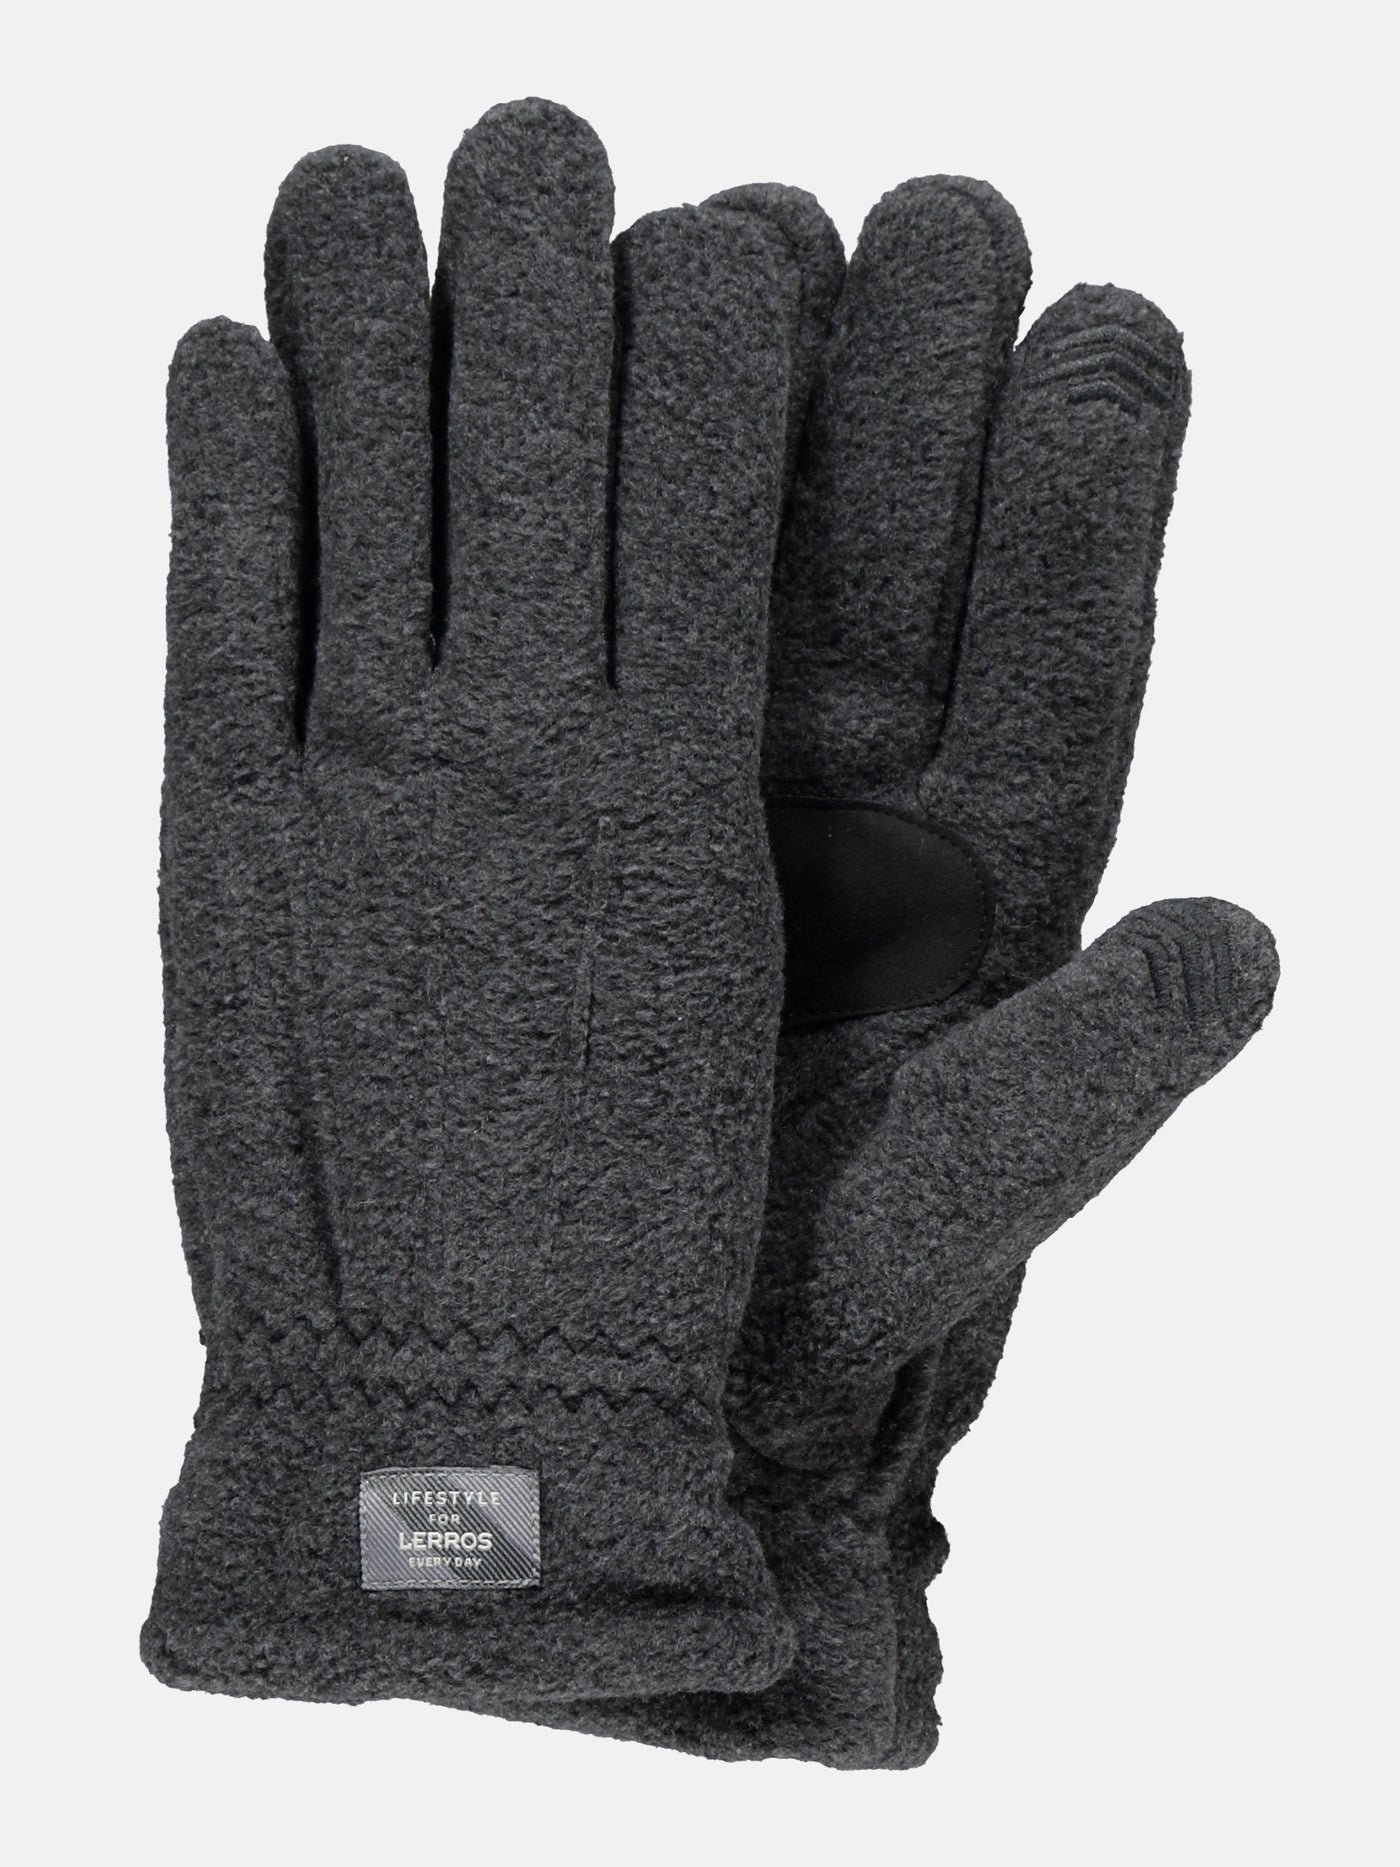 LERROS plain Fleece colour SHOP – glove,